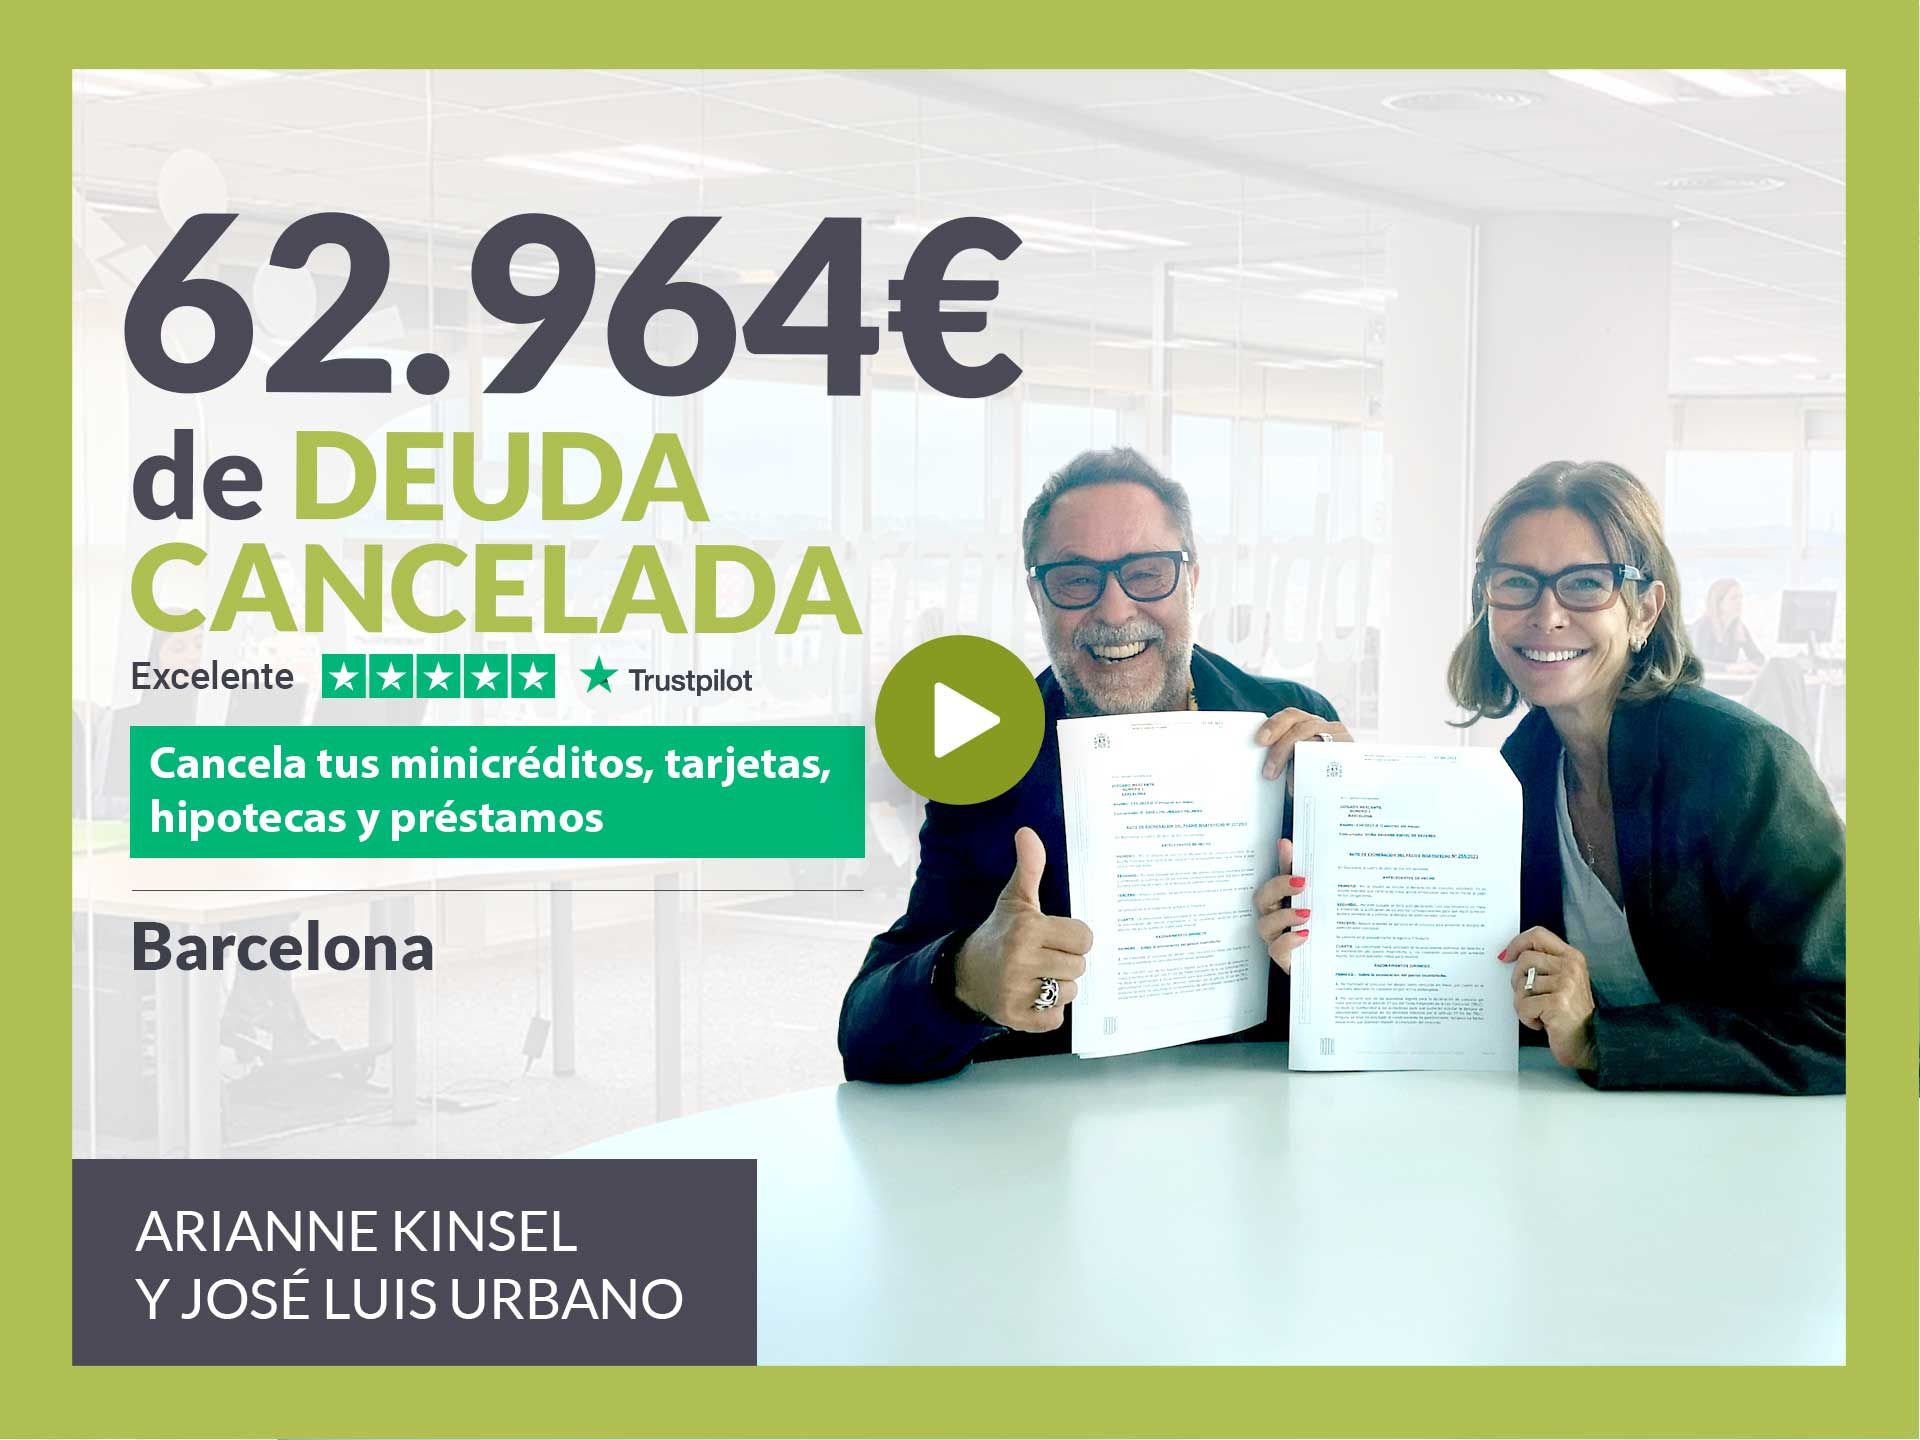 Repara tu Deuda Abogados cancela 62.964? en Barcelona (Catalunya) con la Ley de Segunda Oportunidad